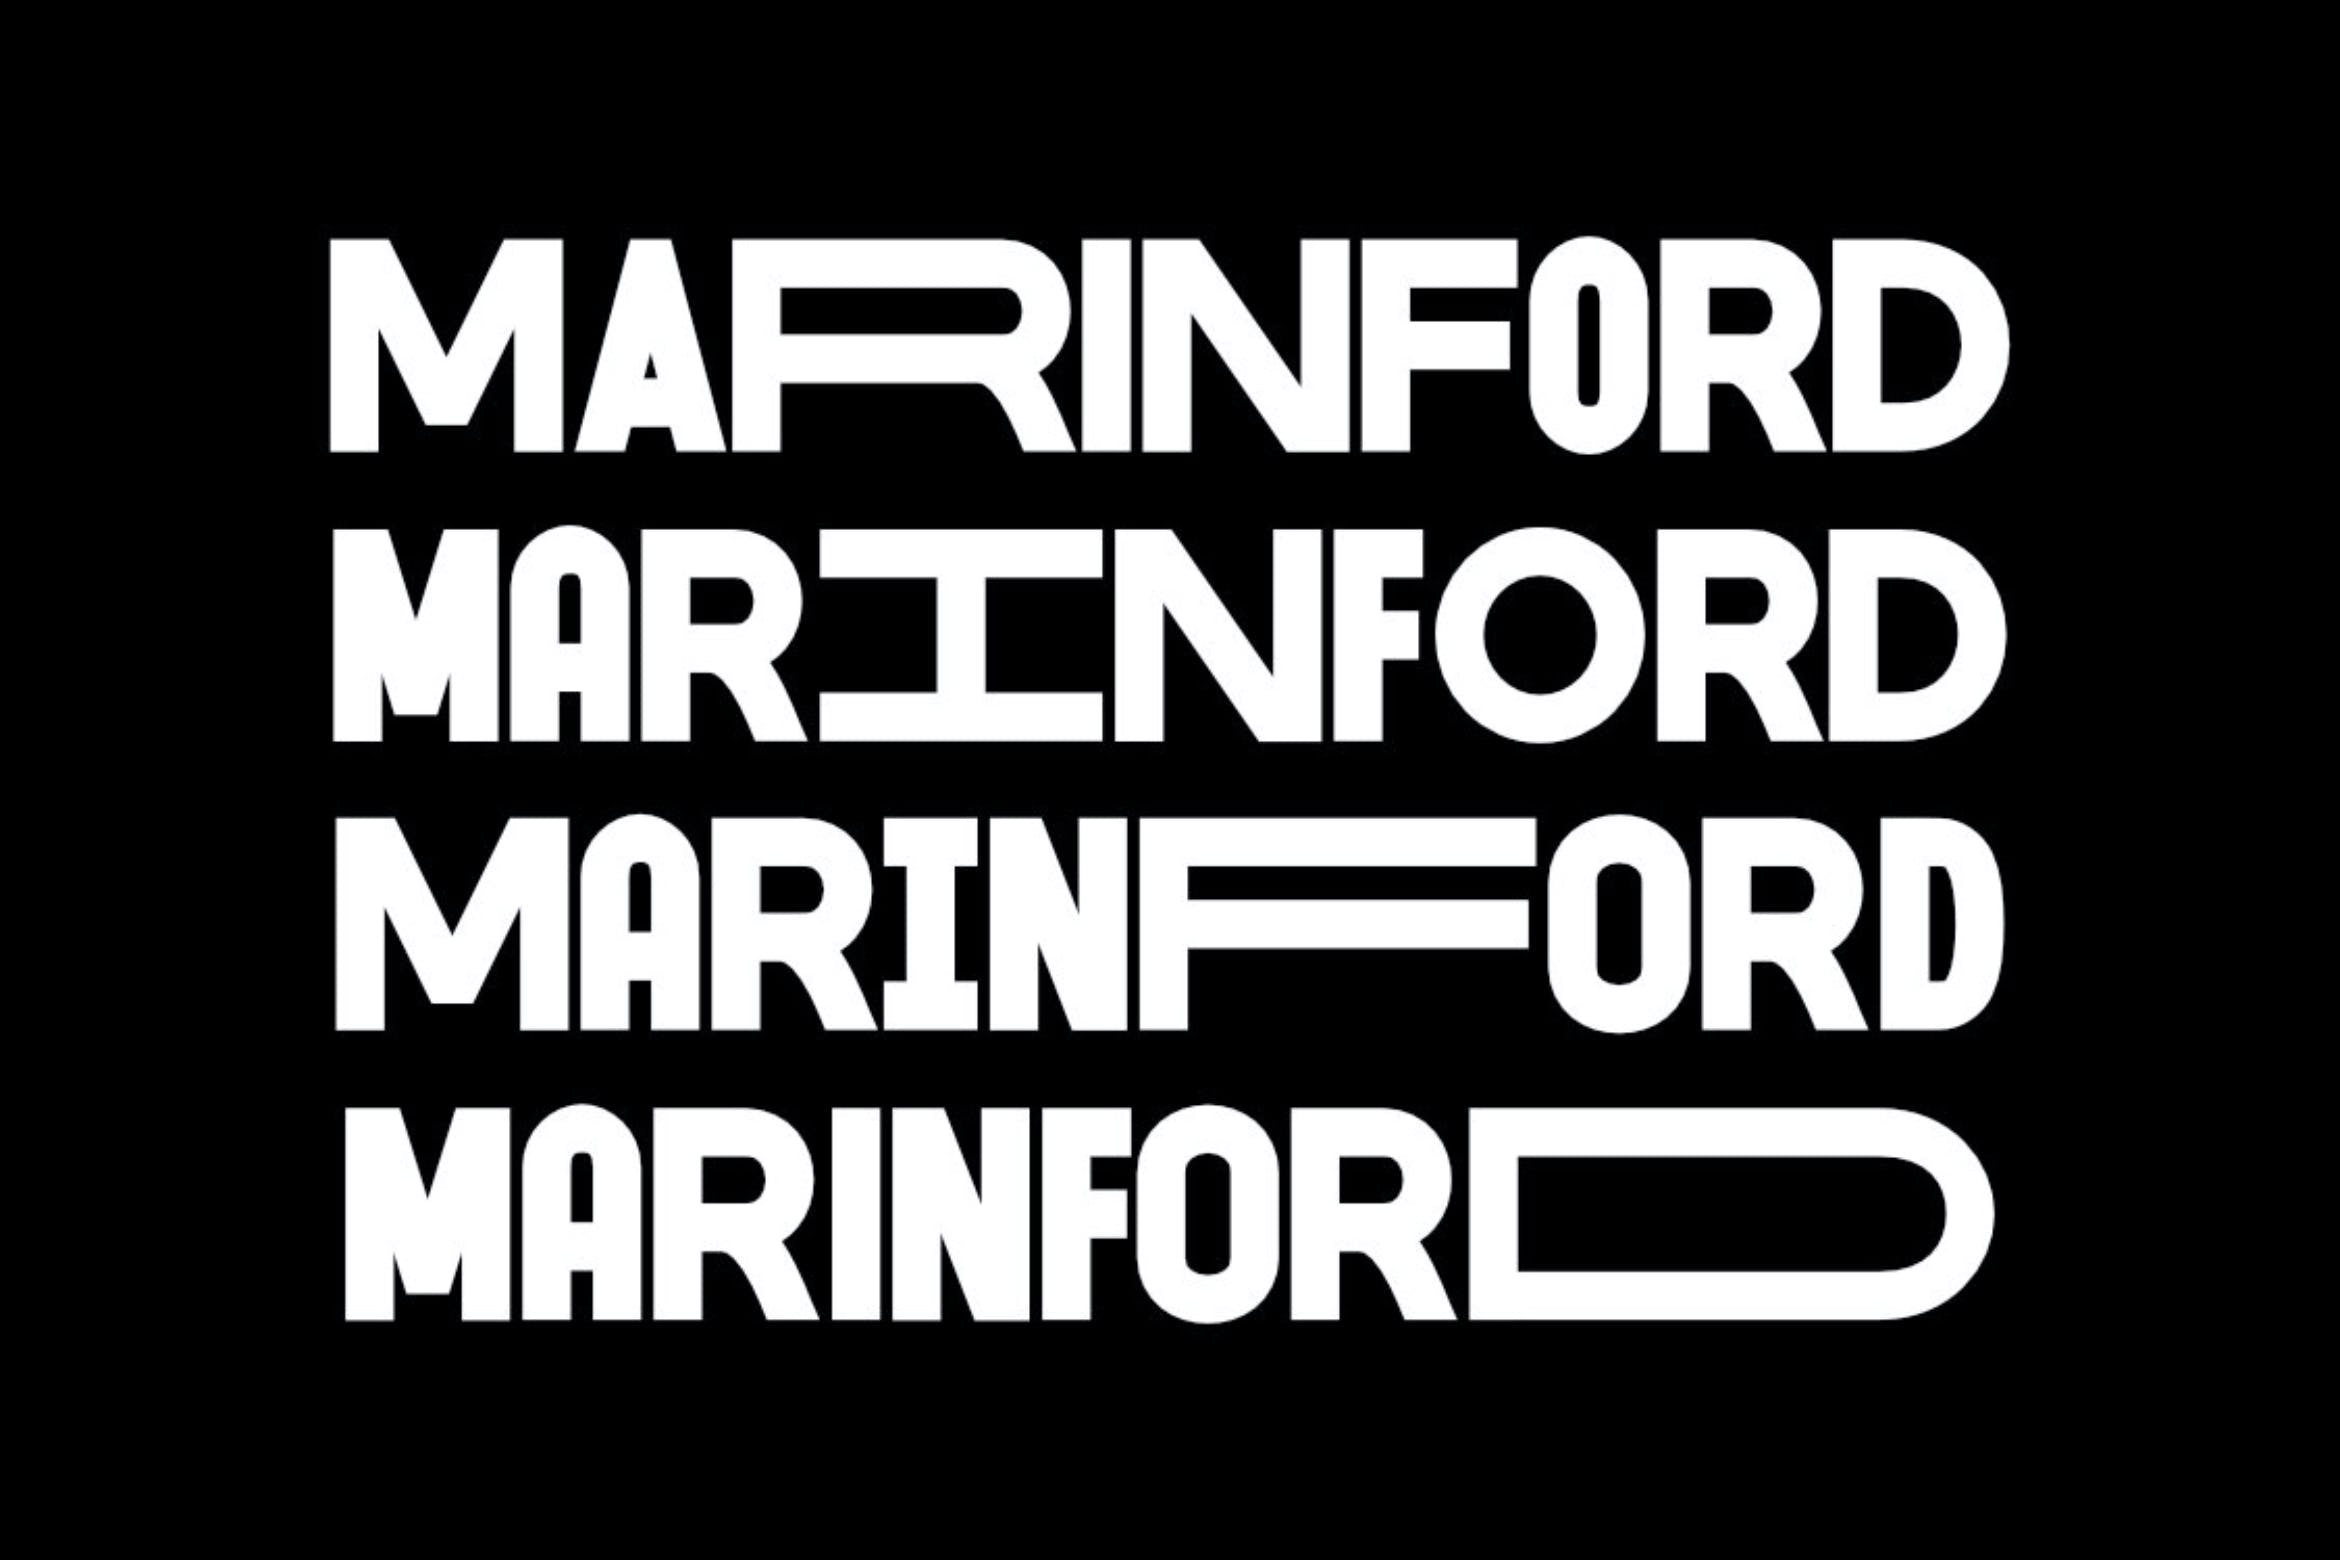 Marinford